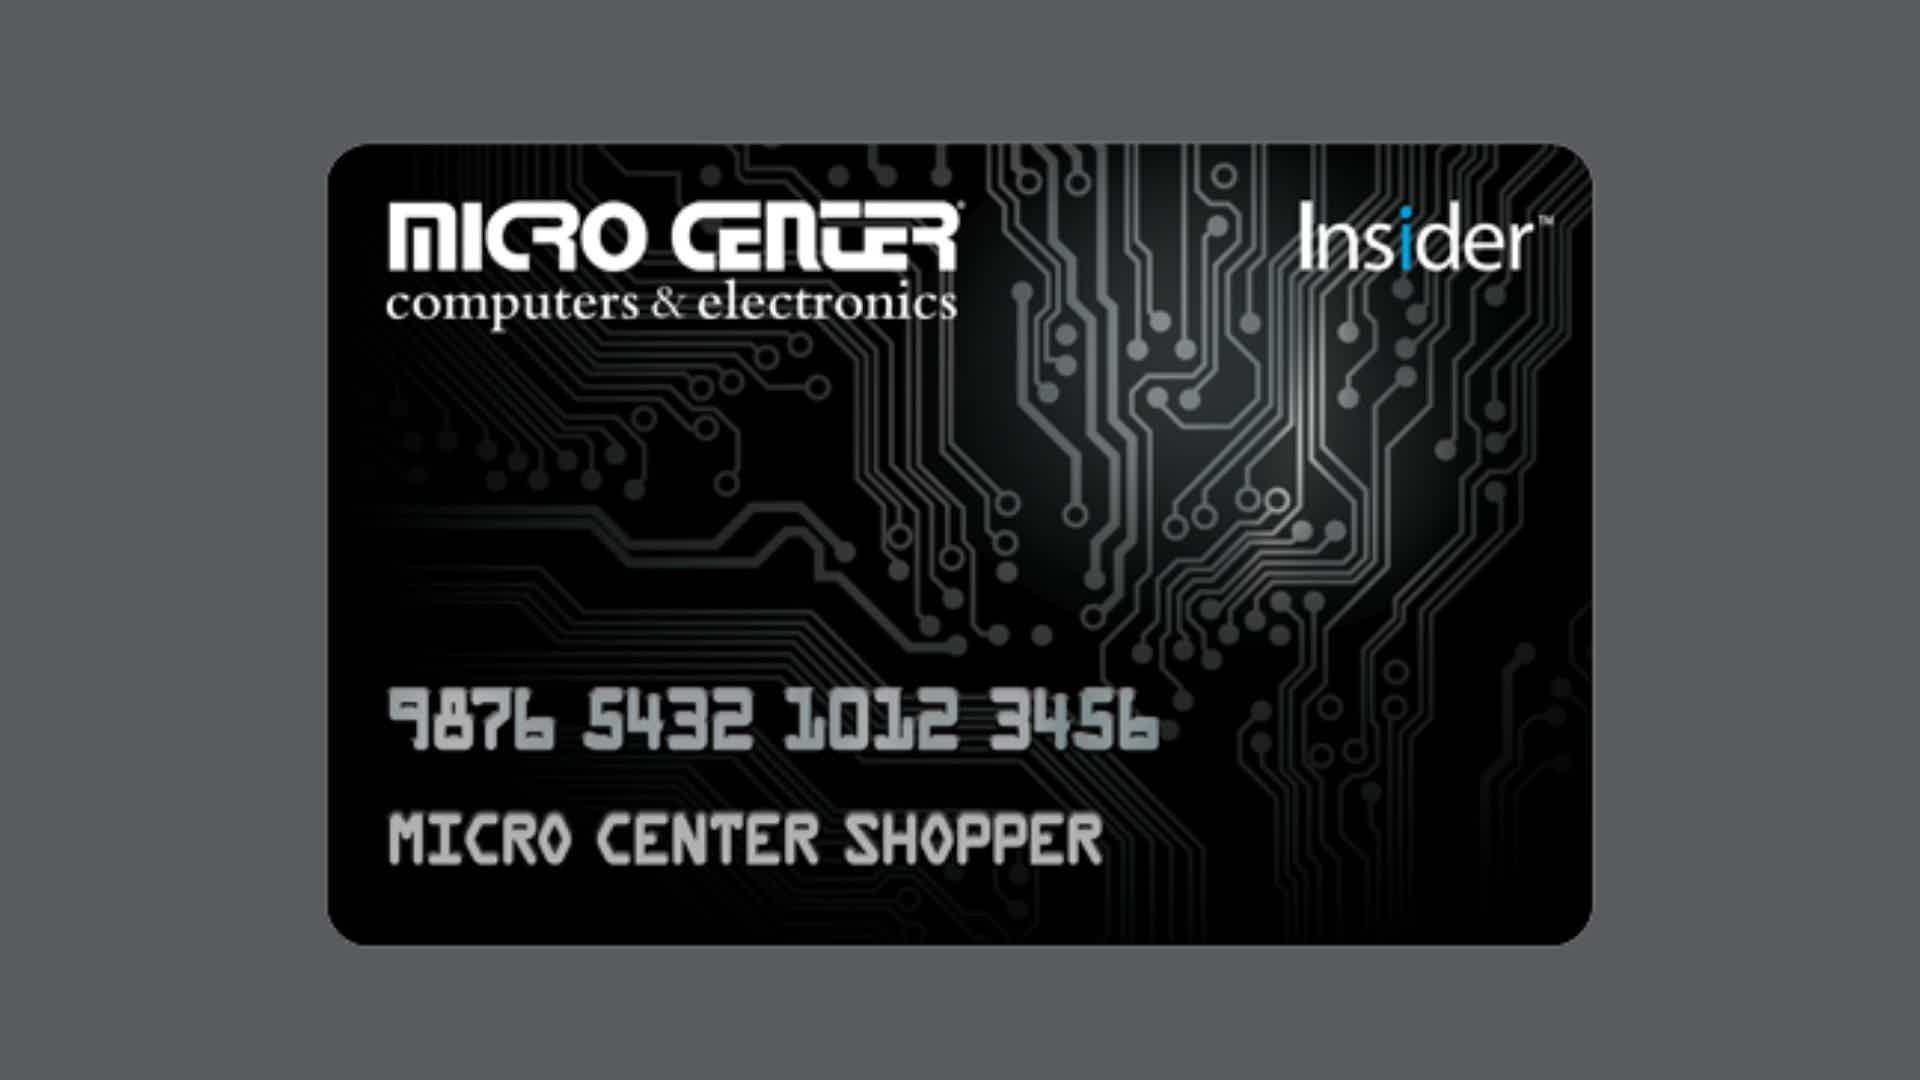 Mas, afinal, como funciona o cartão de crédito Microcenter? Fonte: Microcenter.